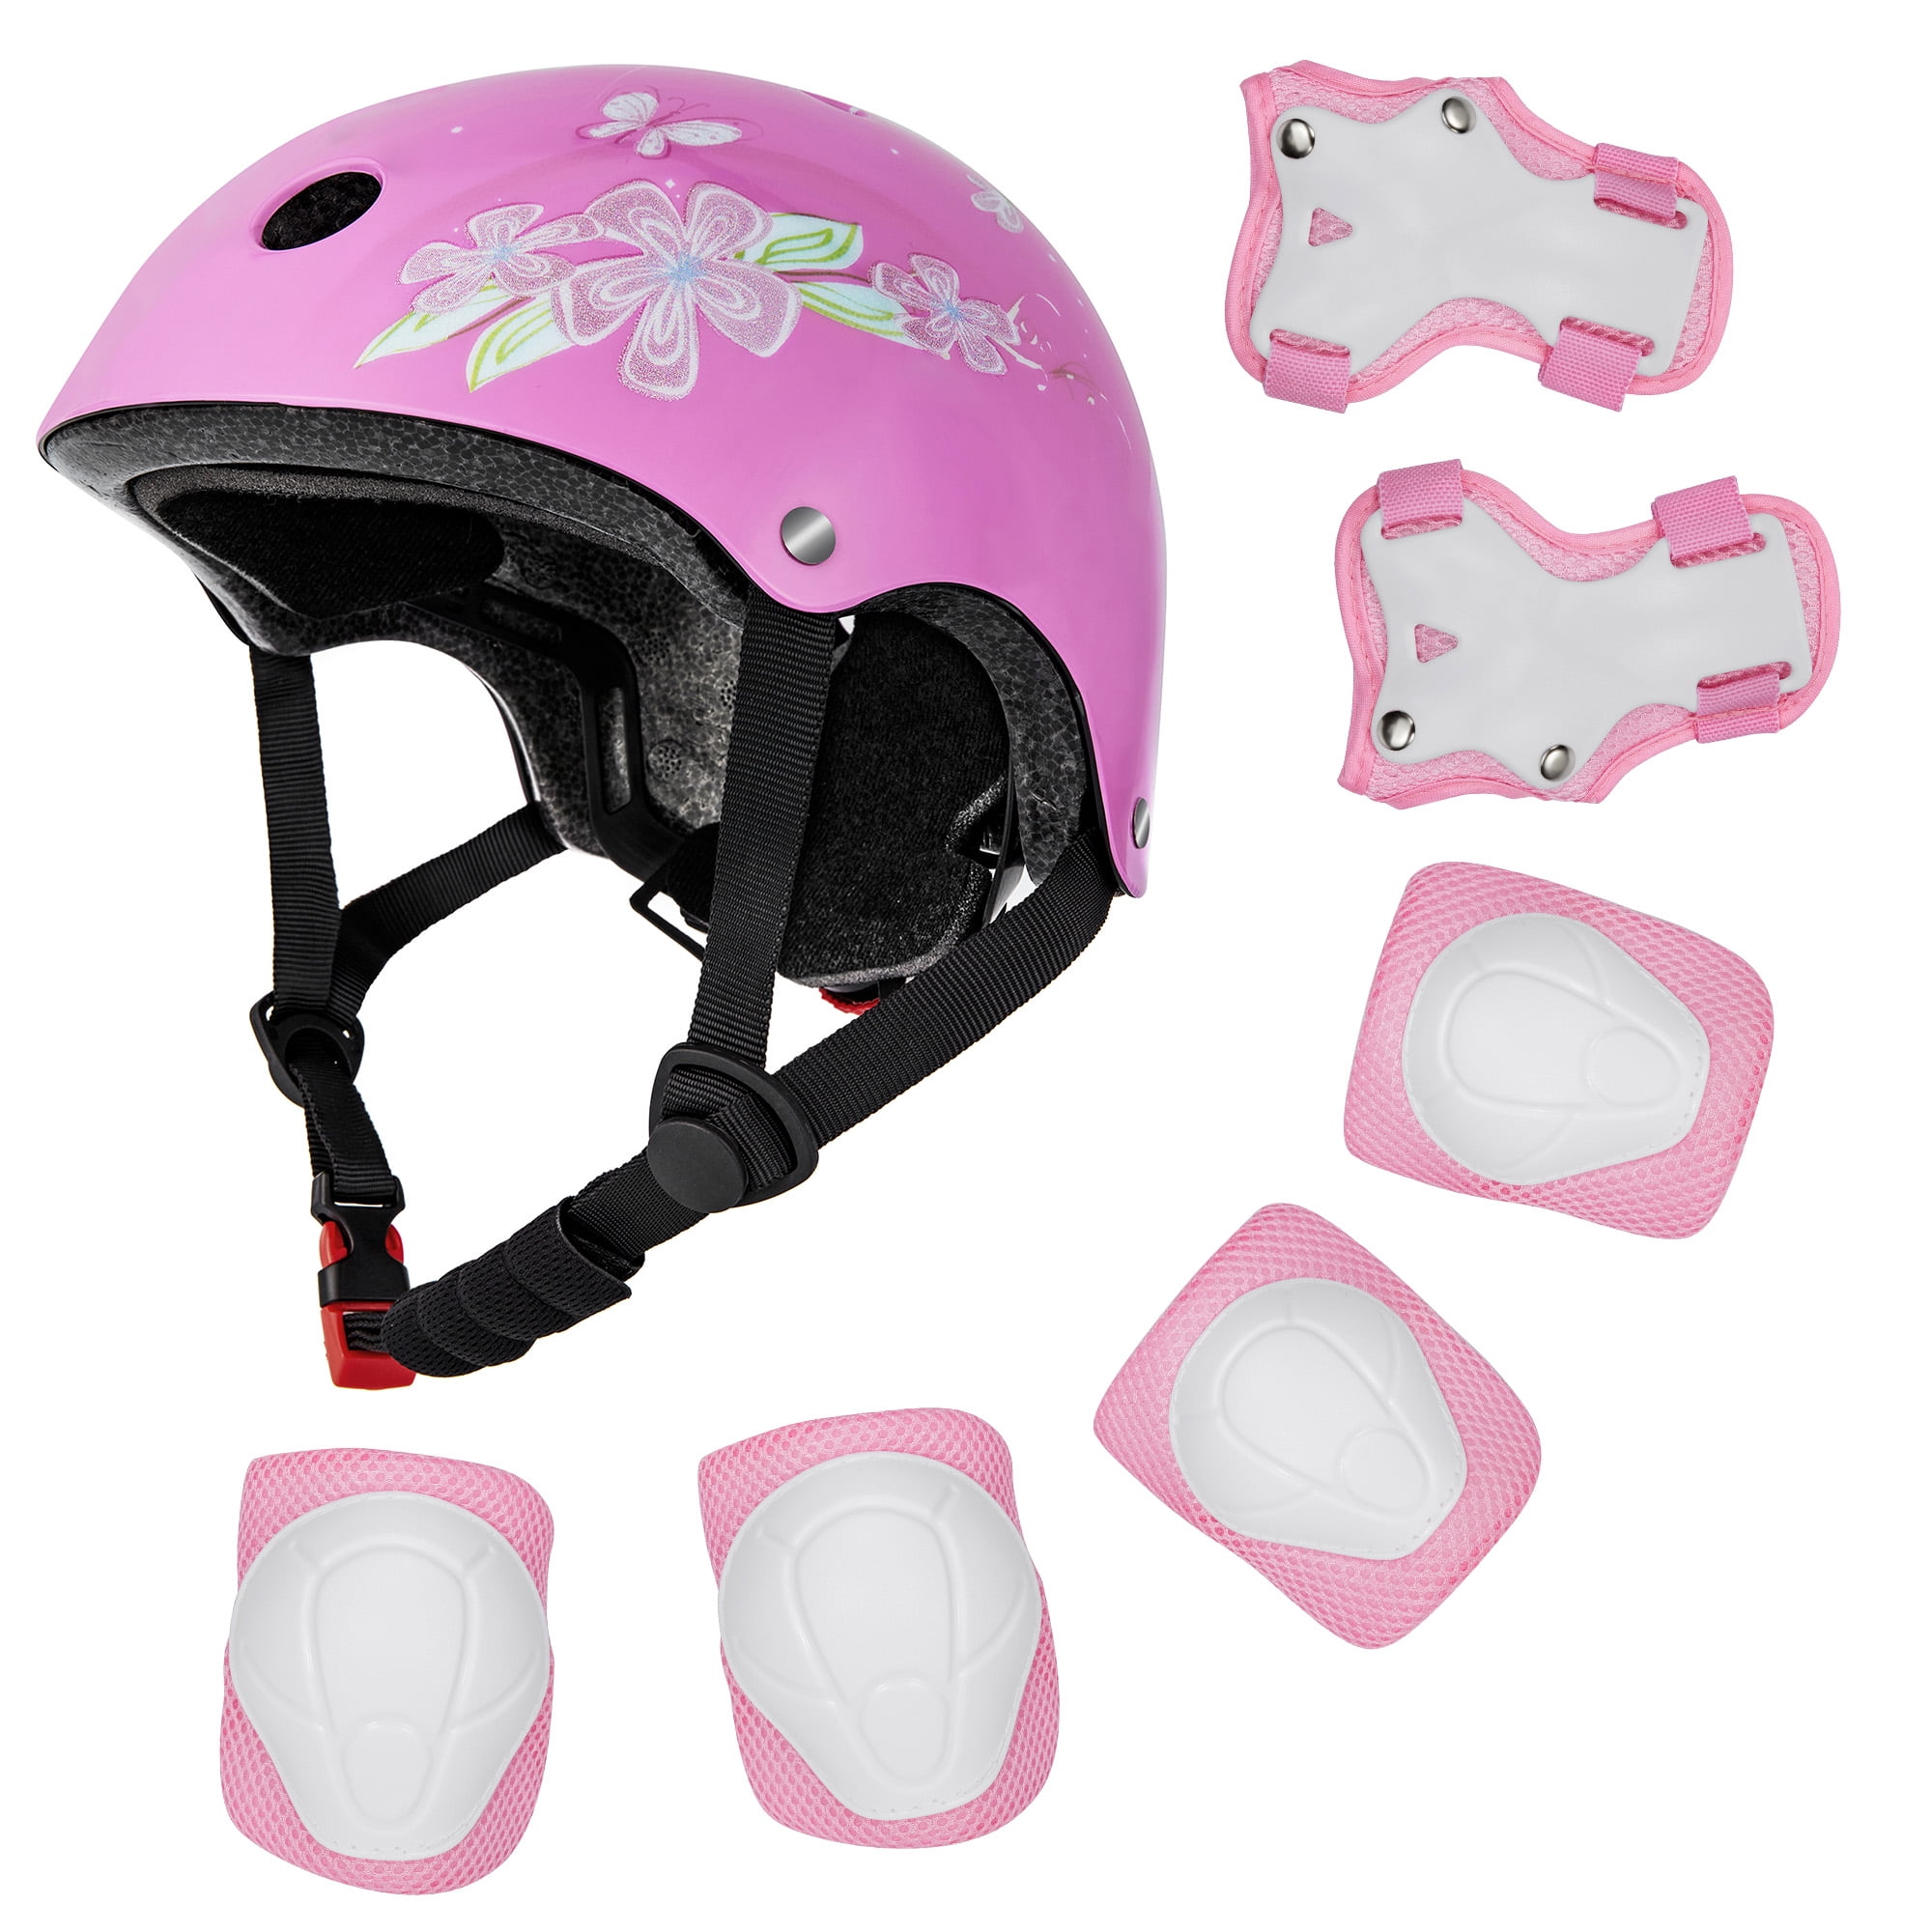 USA Children Bike Sport Helmet Kids Skateboard Skate Stunt Safety Helmets+Light 